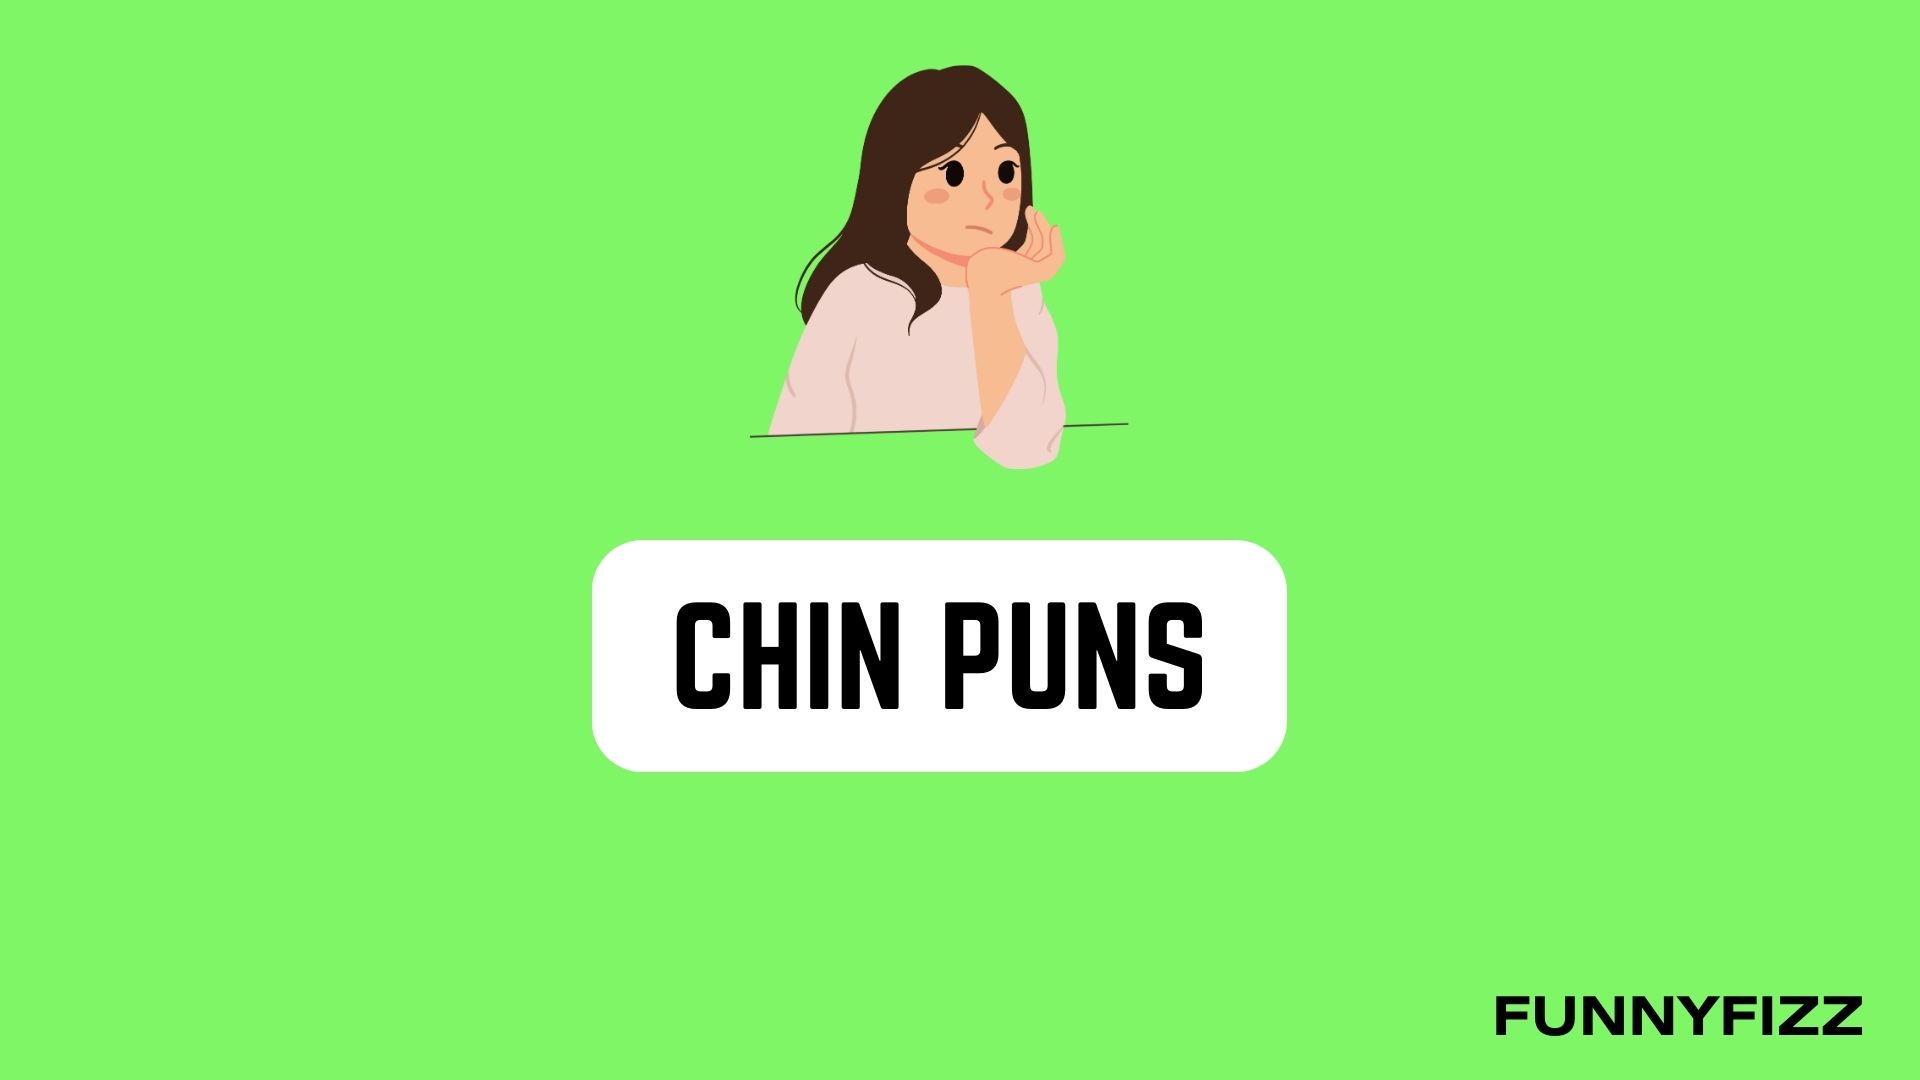 Chin Puns